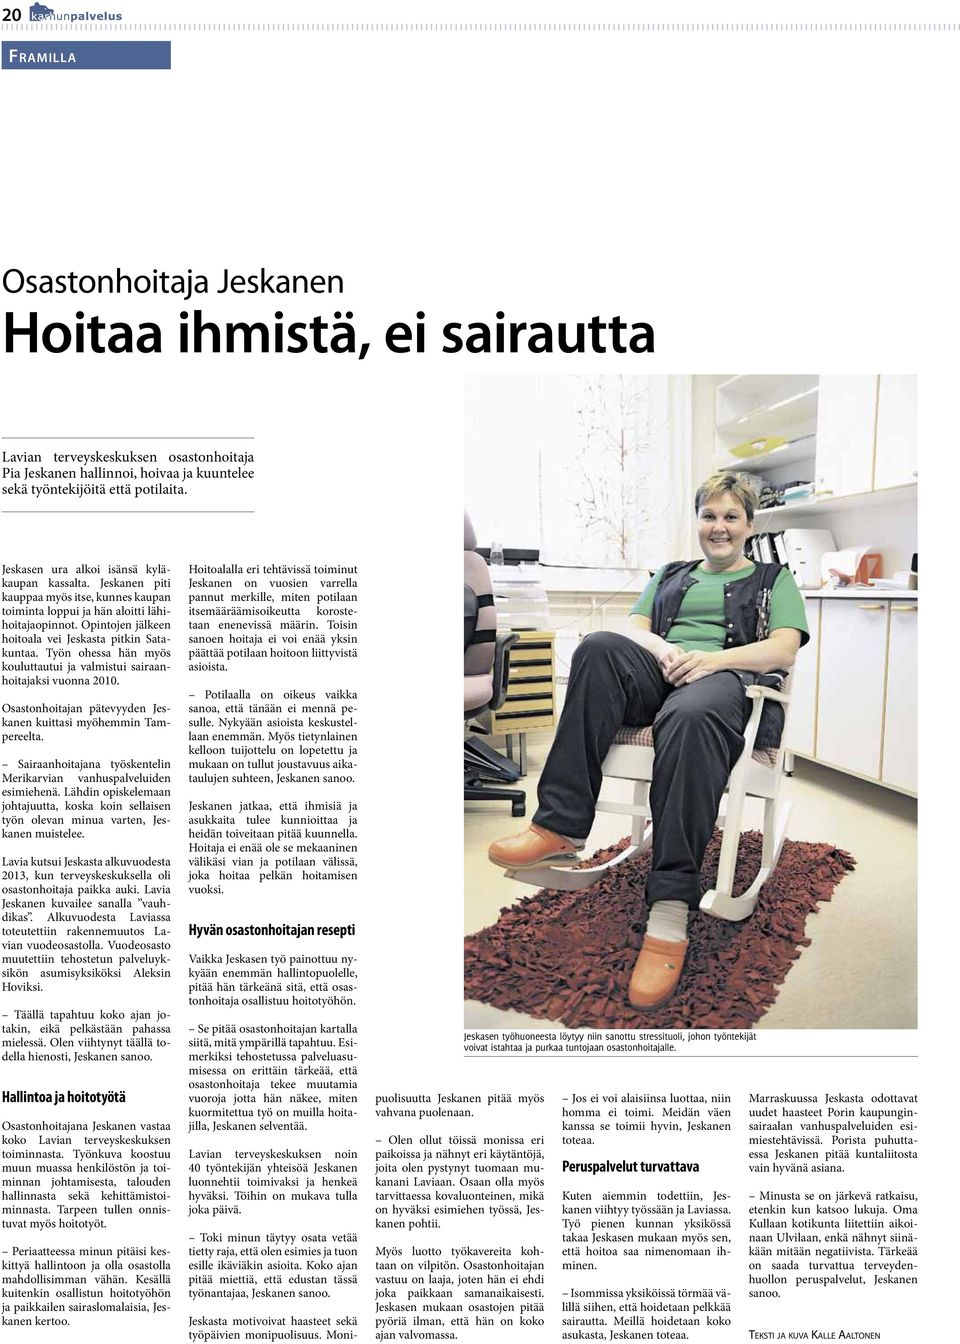 Opintojen jälkeen hoitoala vei Jeskasta pitkin Satakuntaa. Työn ohessa hän myös kouluttautui ja valmistui sairaanhoitajaksi vuonna 2010.